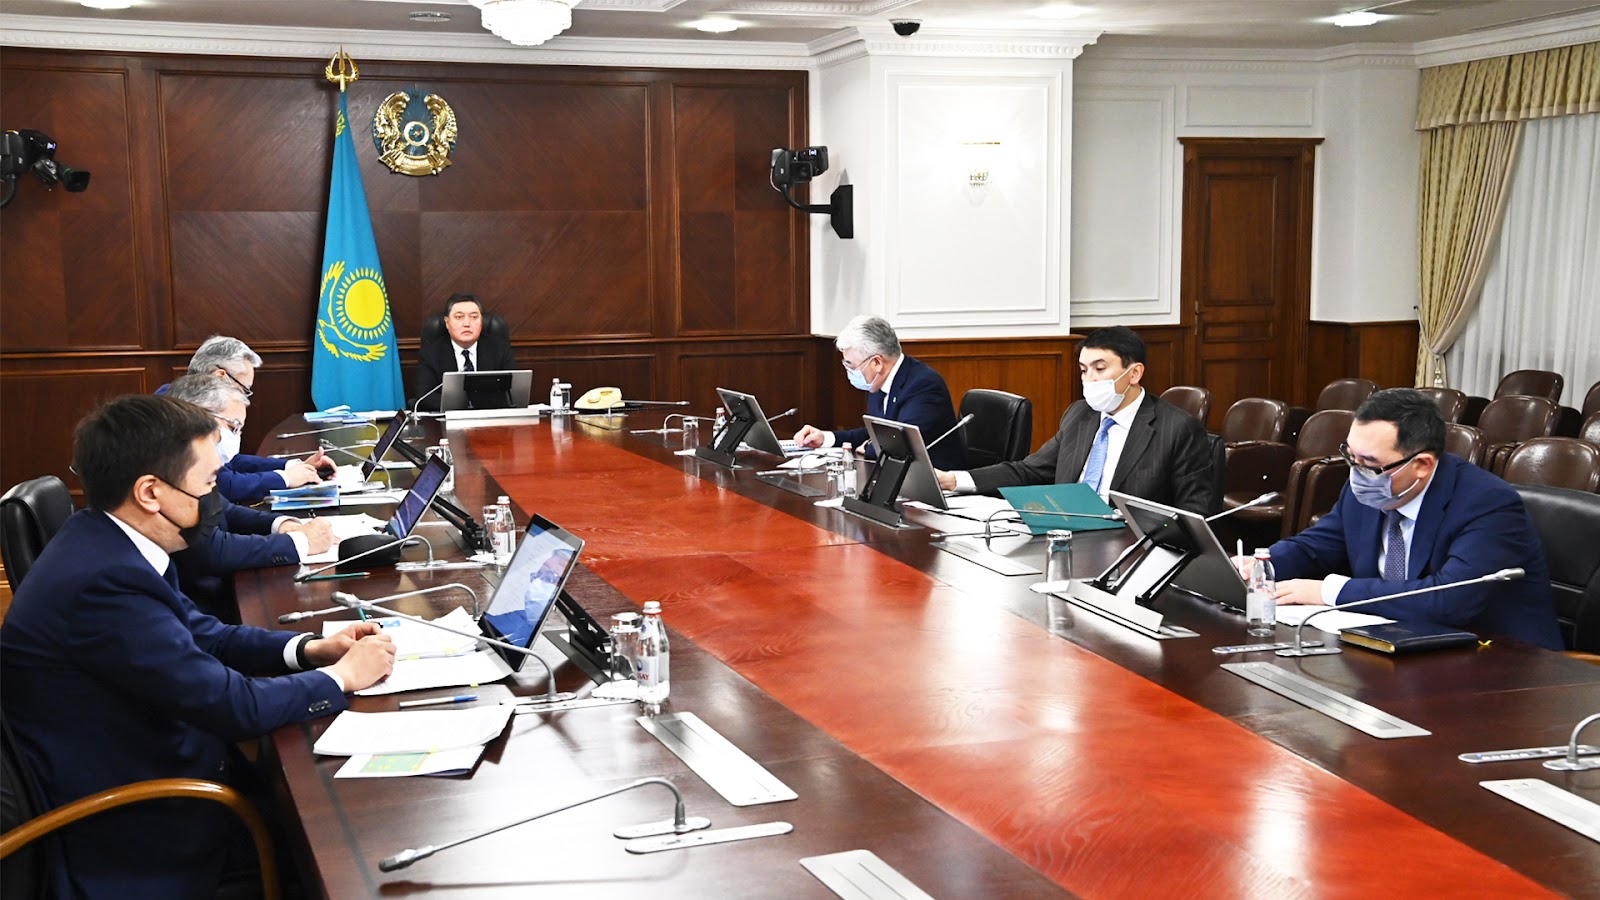 Казахстан будет председательствовать в СНГ в 2022 году 